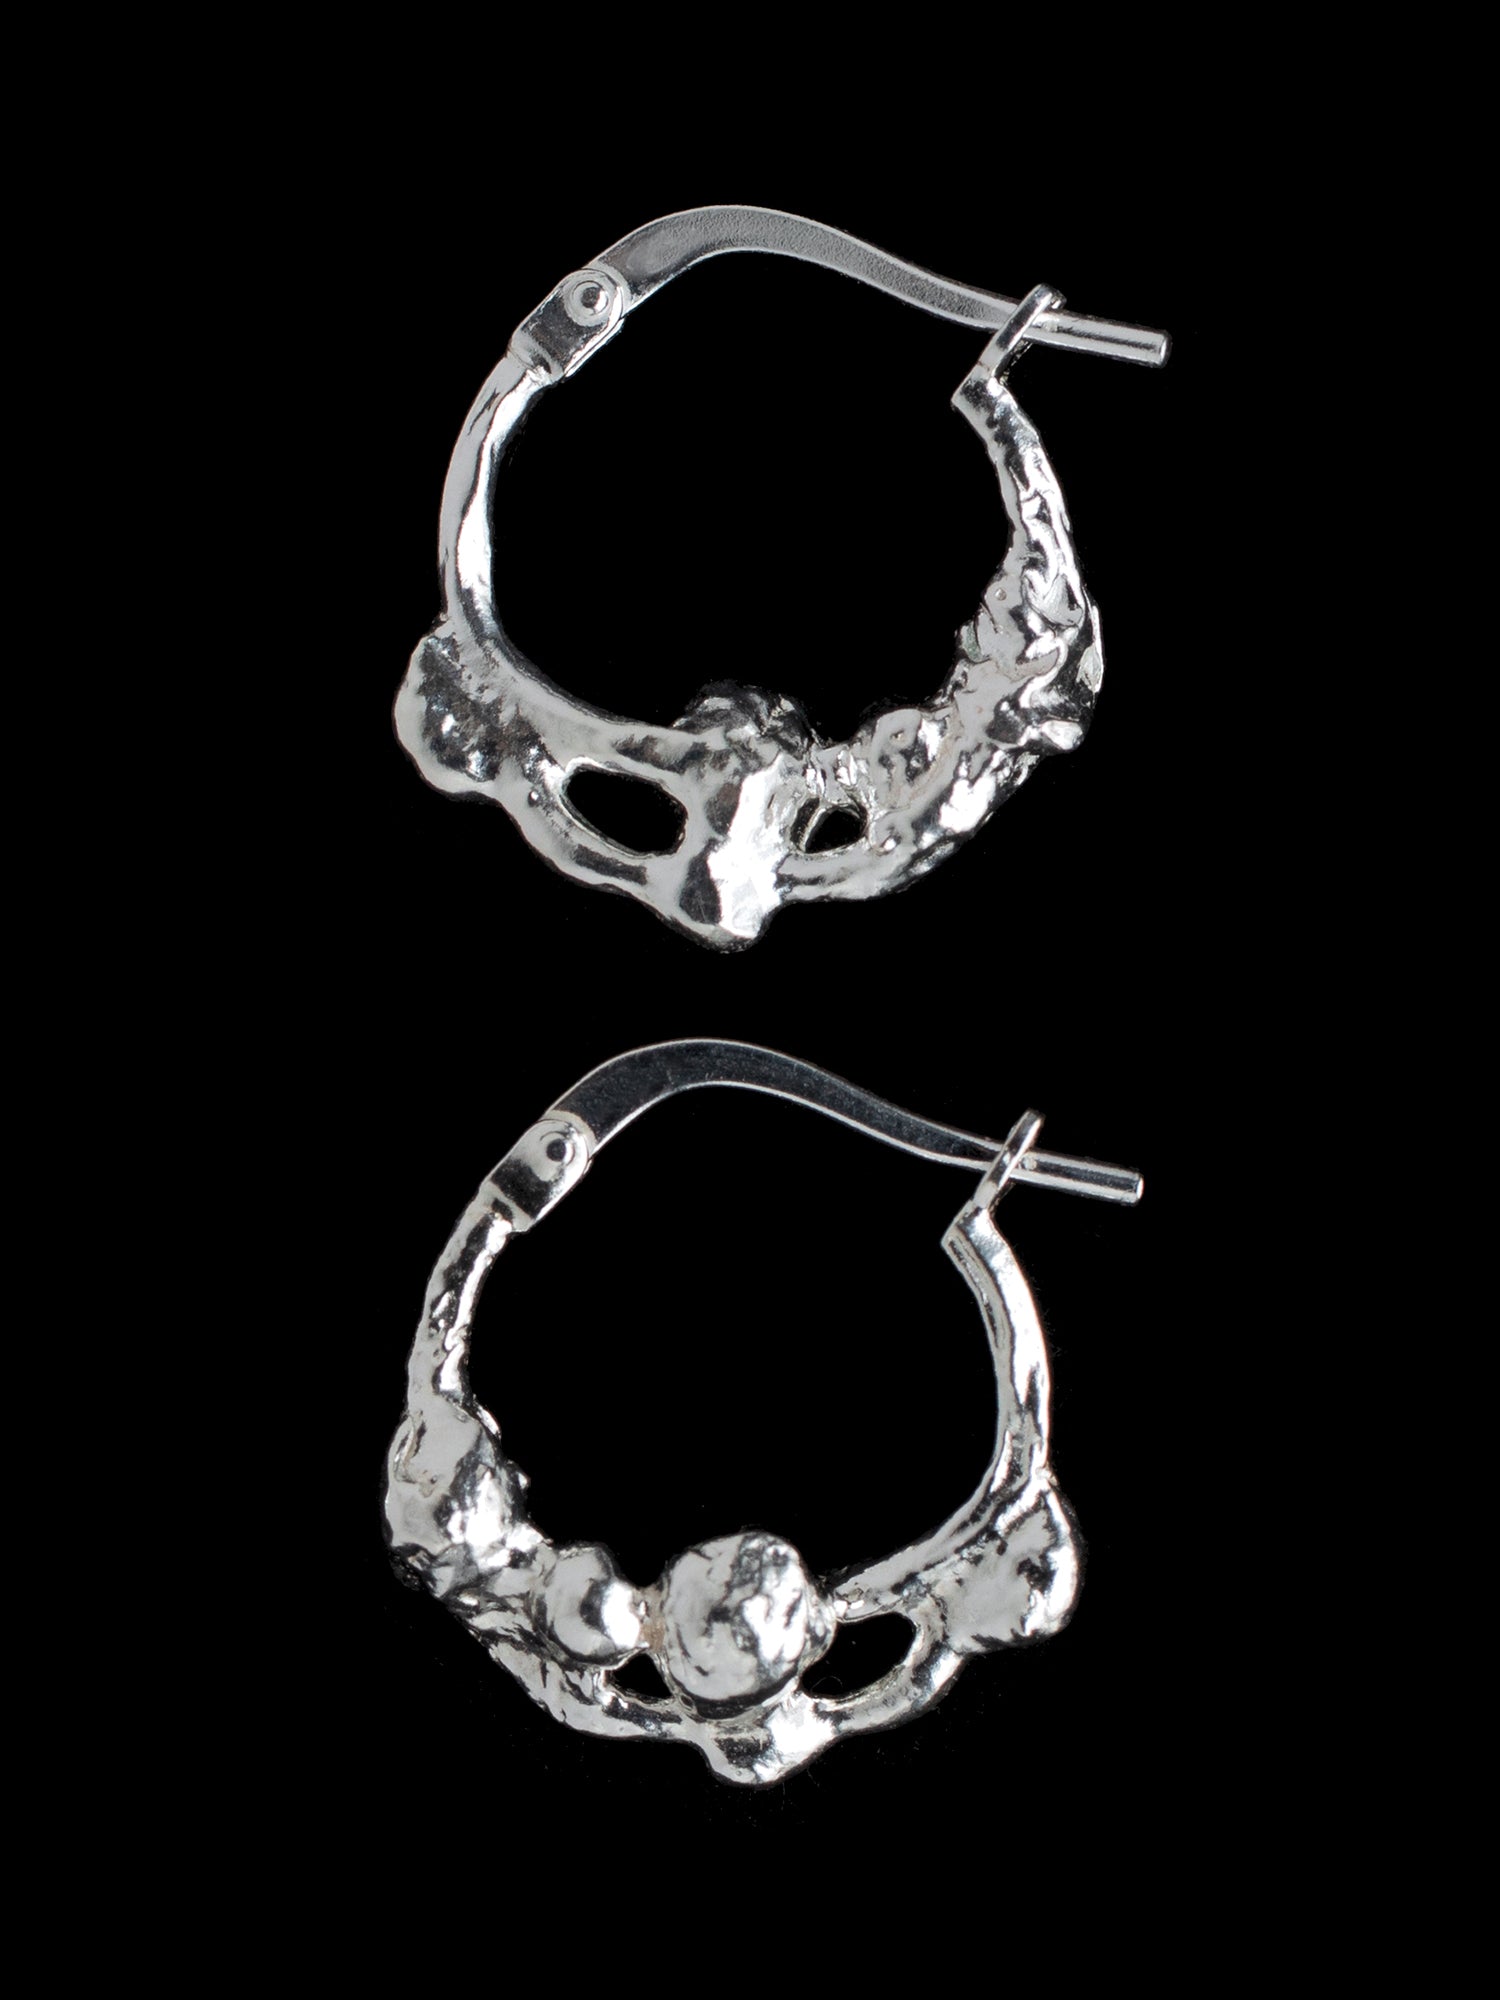 Distorted hoop earrings handmade in silver